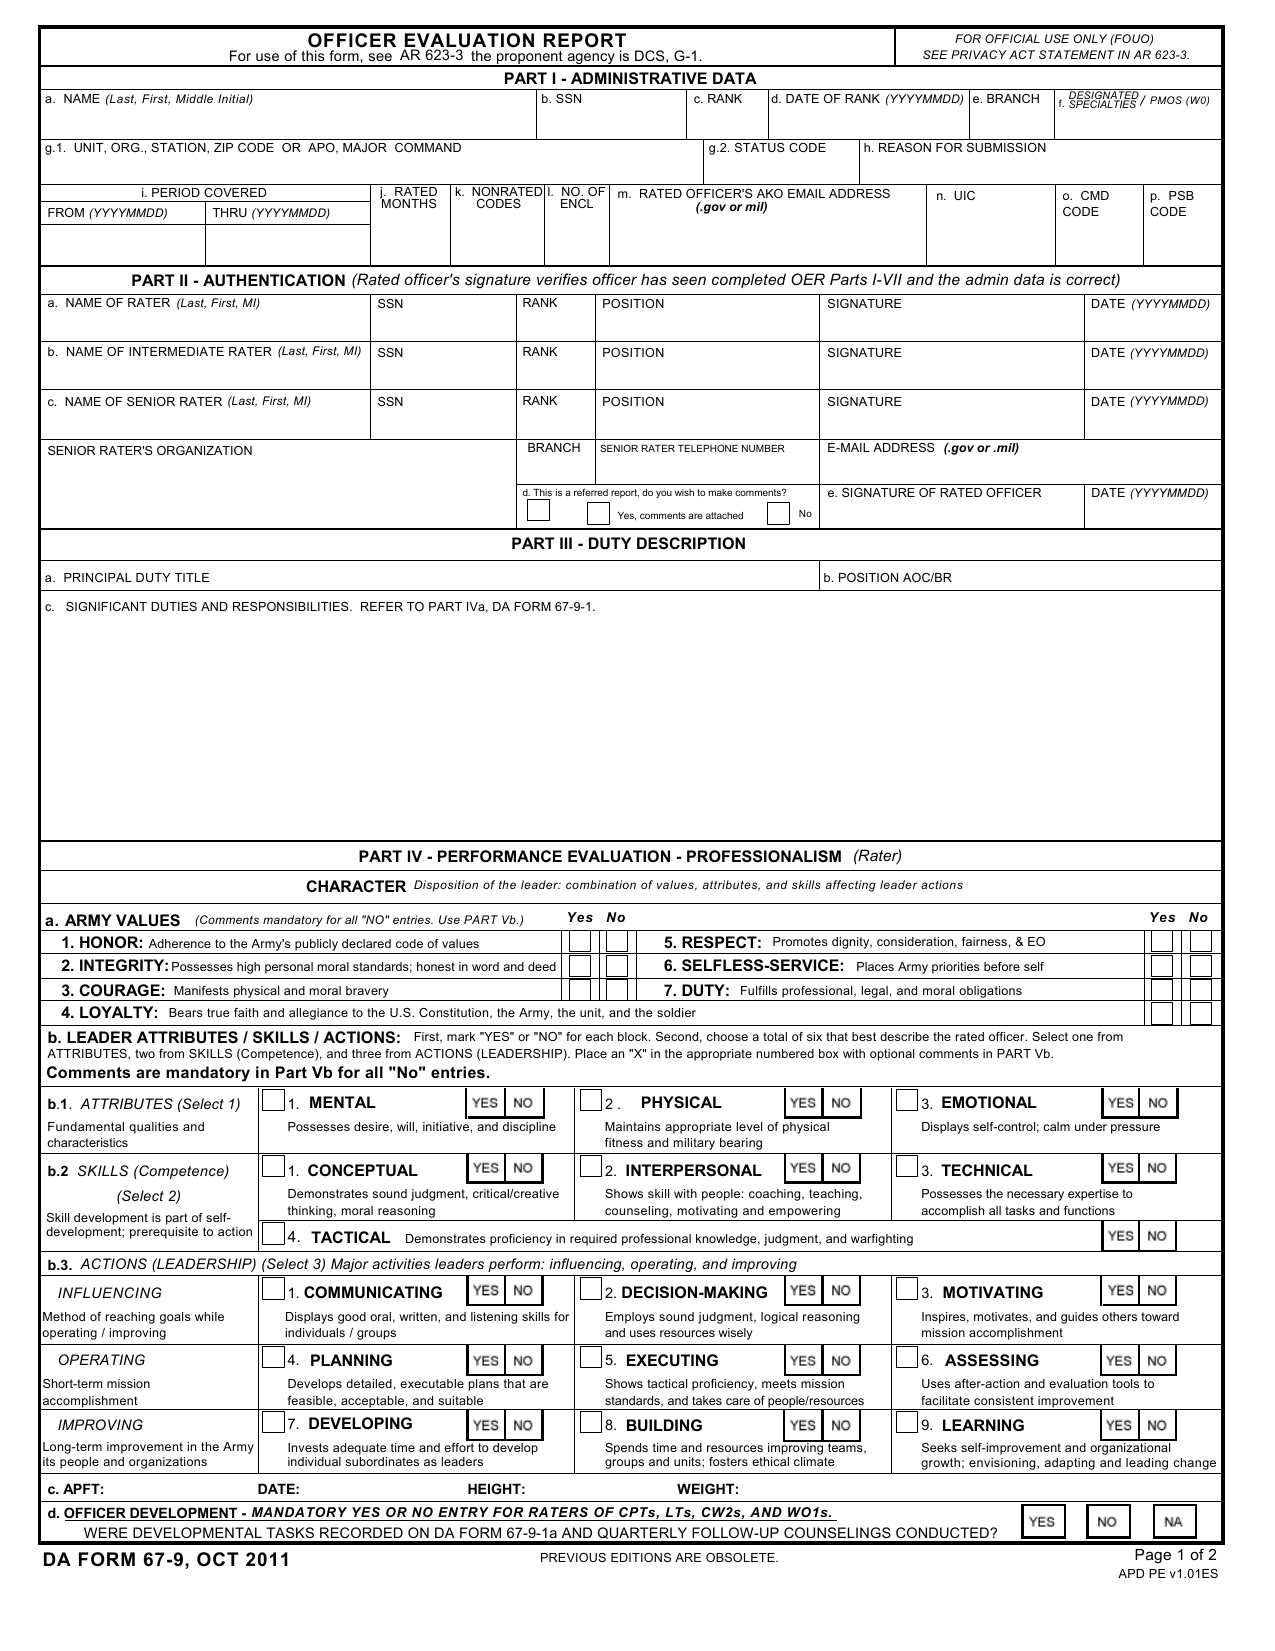 Download DA Form 679 Officer Evaluation Report PDF XFDL